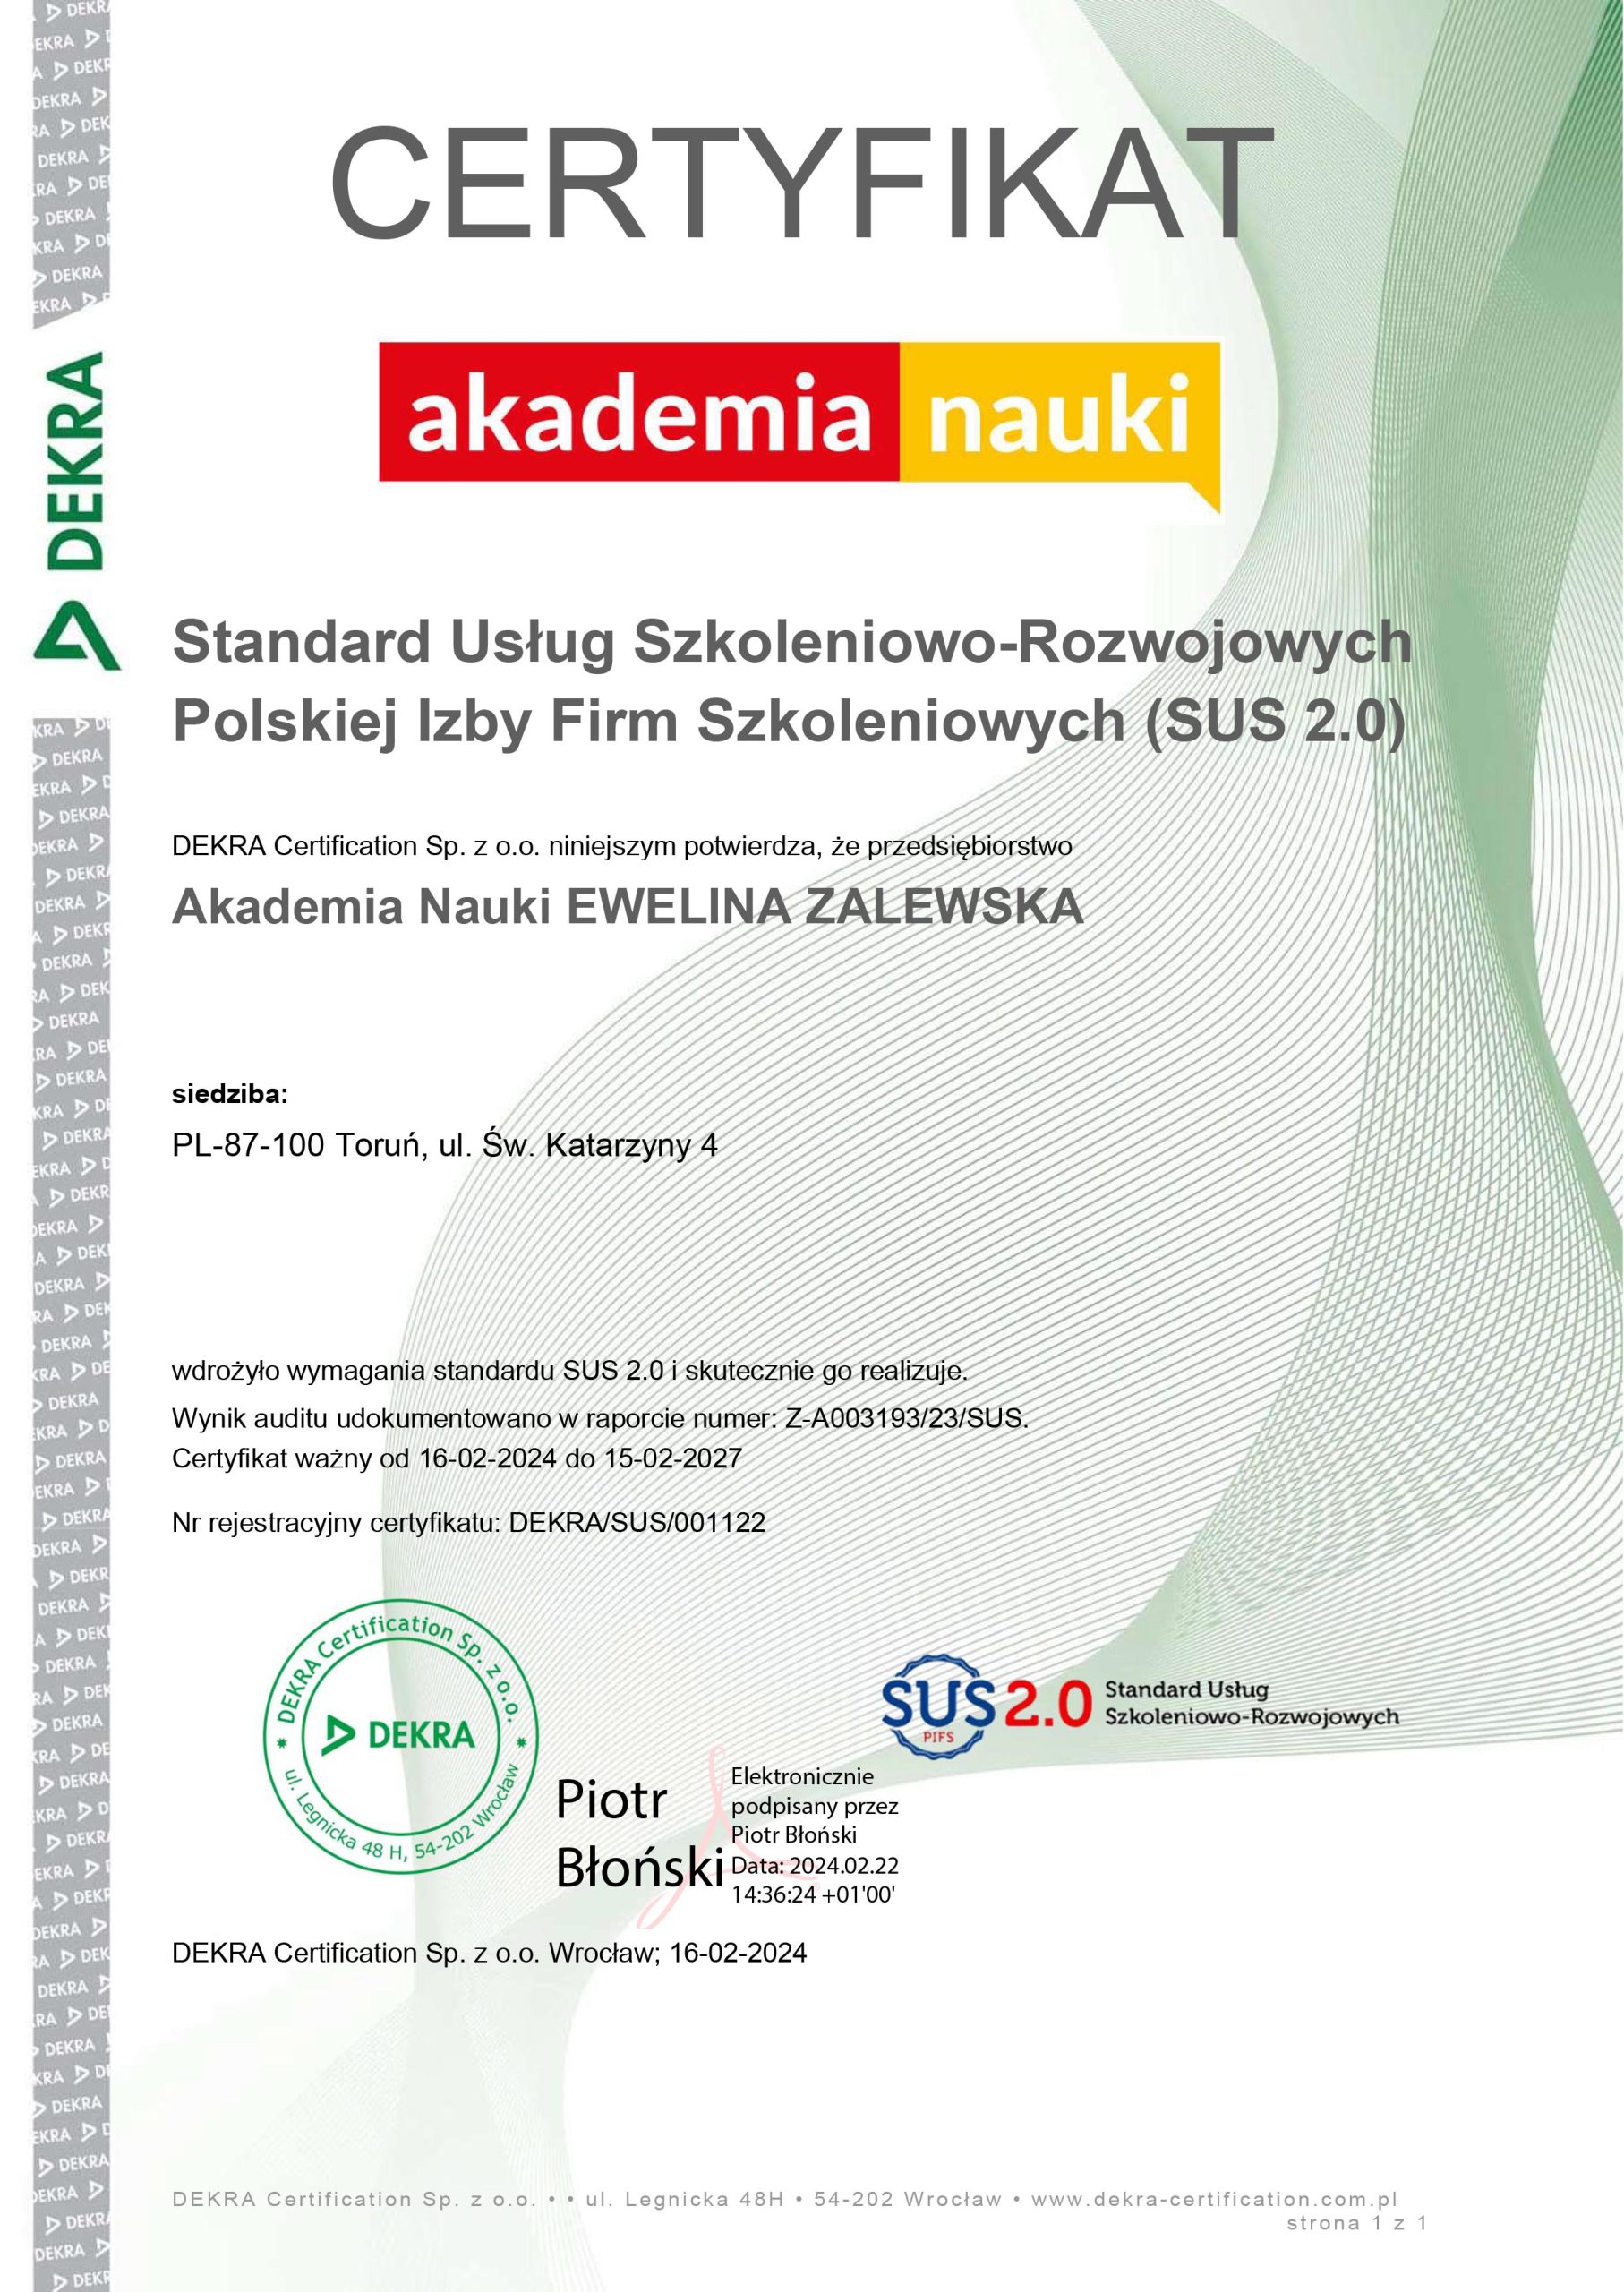 Microsoft Word - PL certyfikat elektroniczny SUS Akademia Nauki